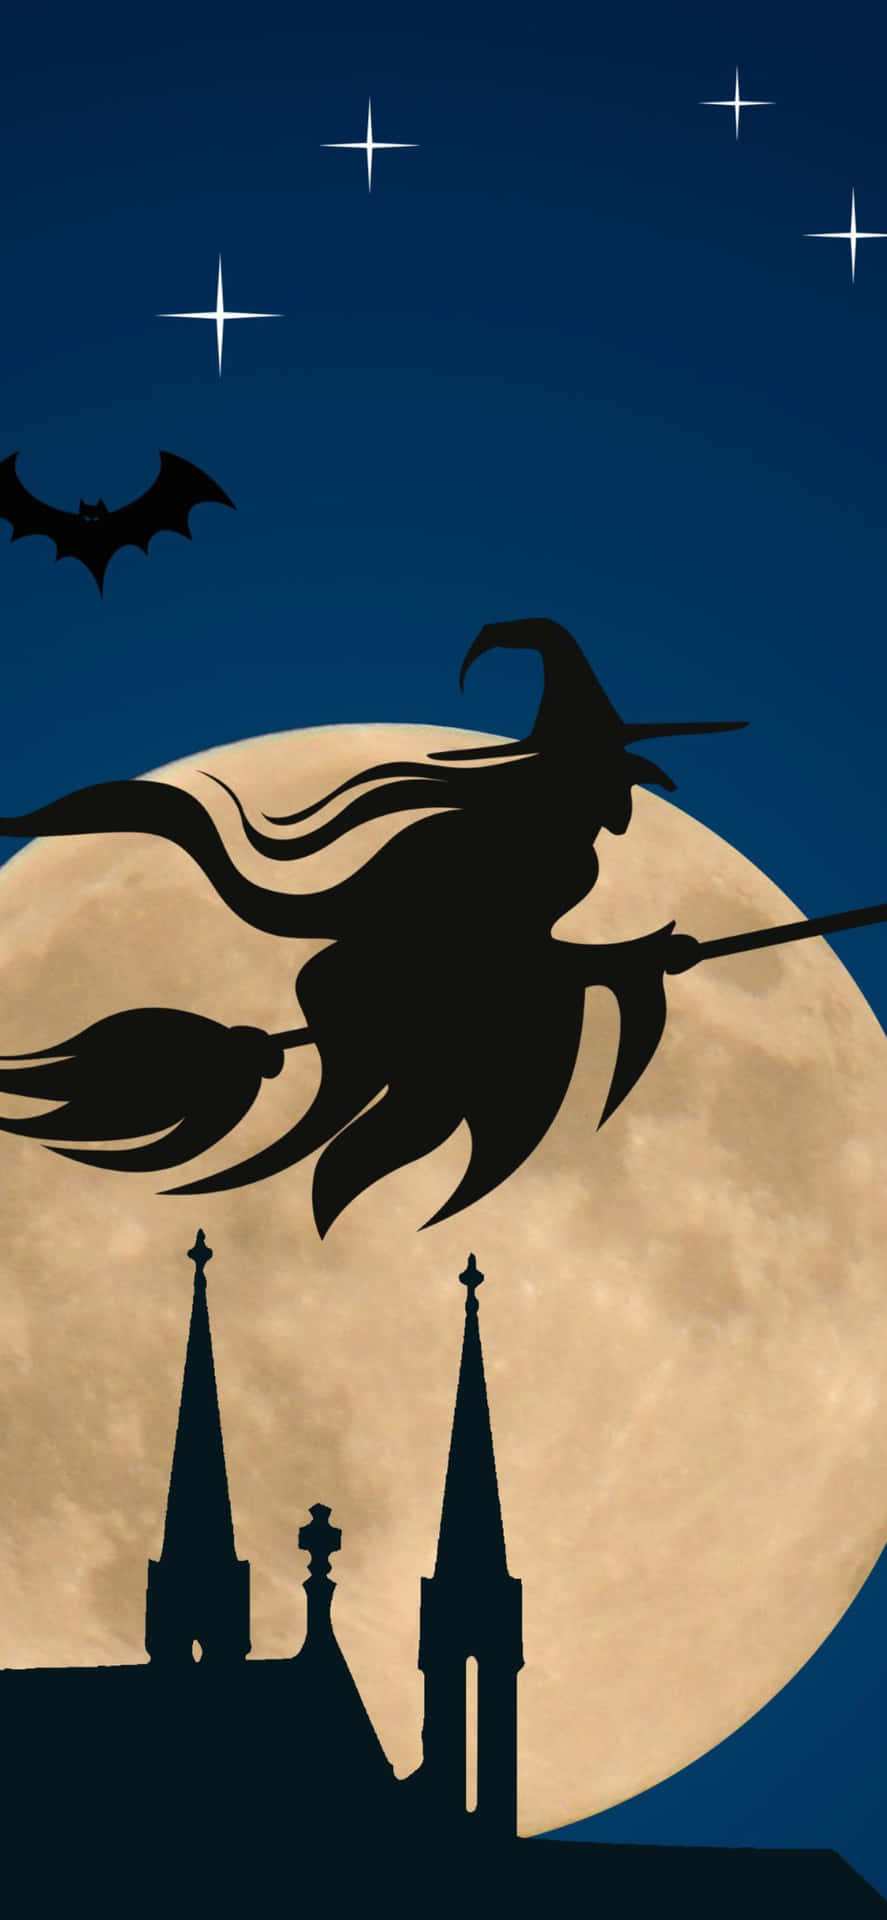 Iphonehalloween-hintergrund: Fliegende Hexe In Der Nacht